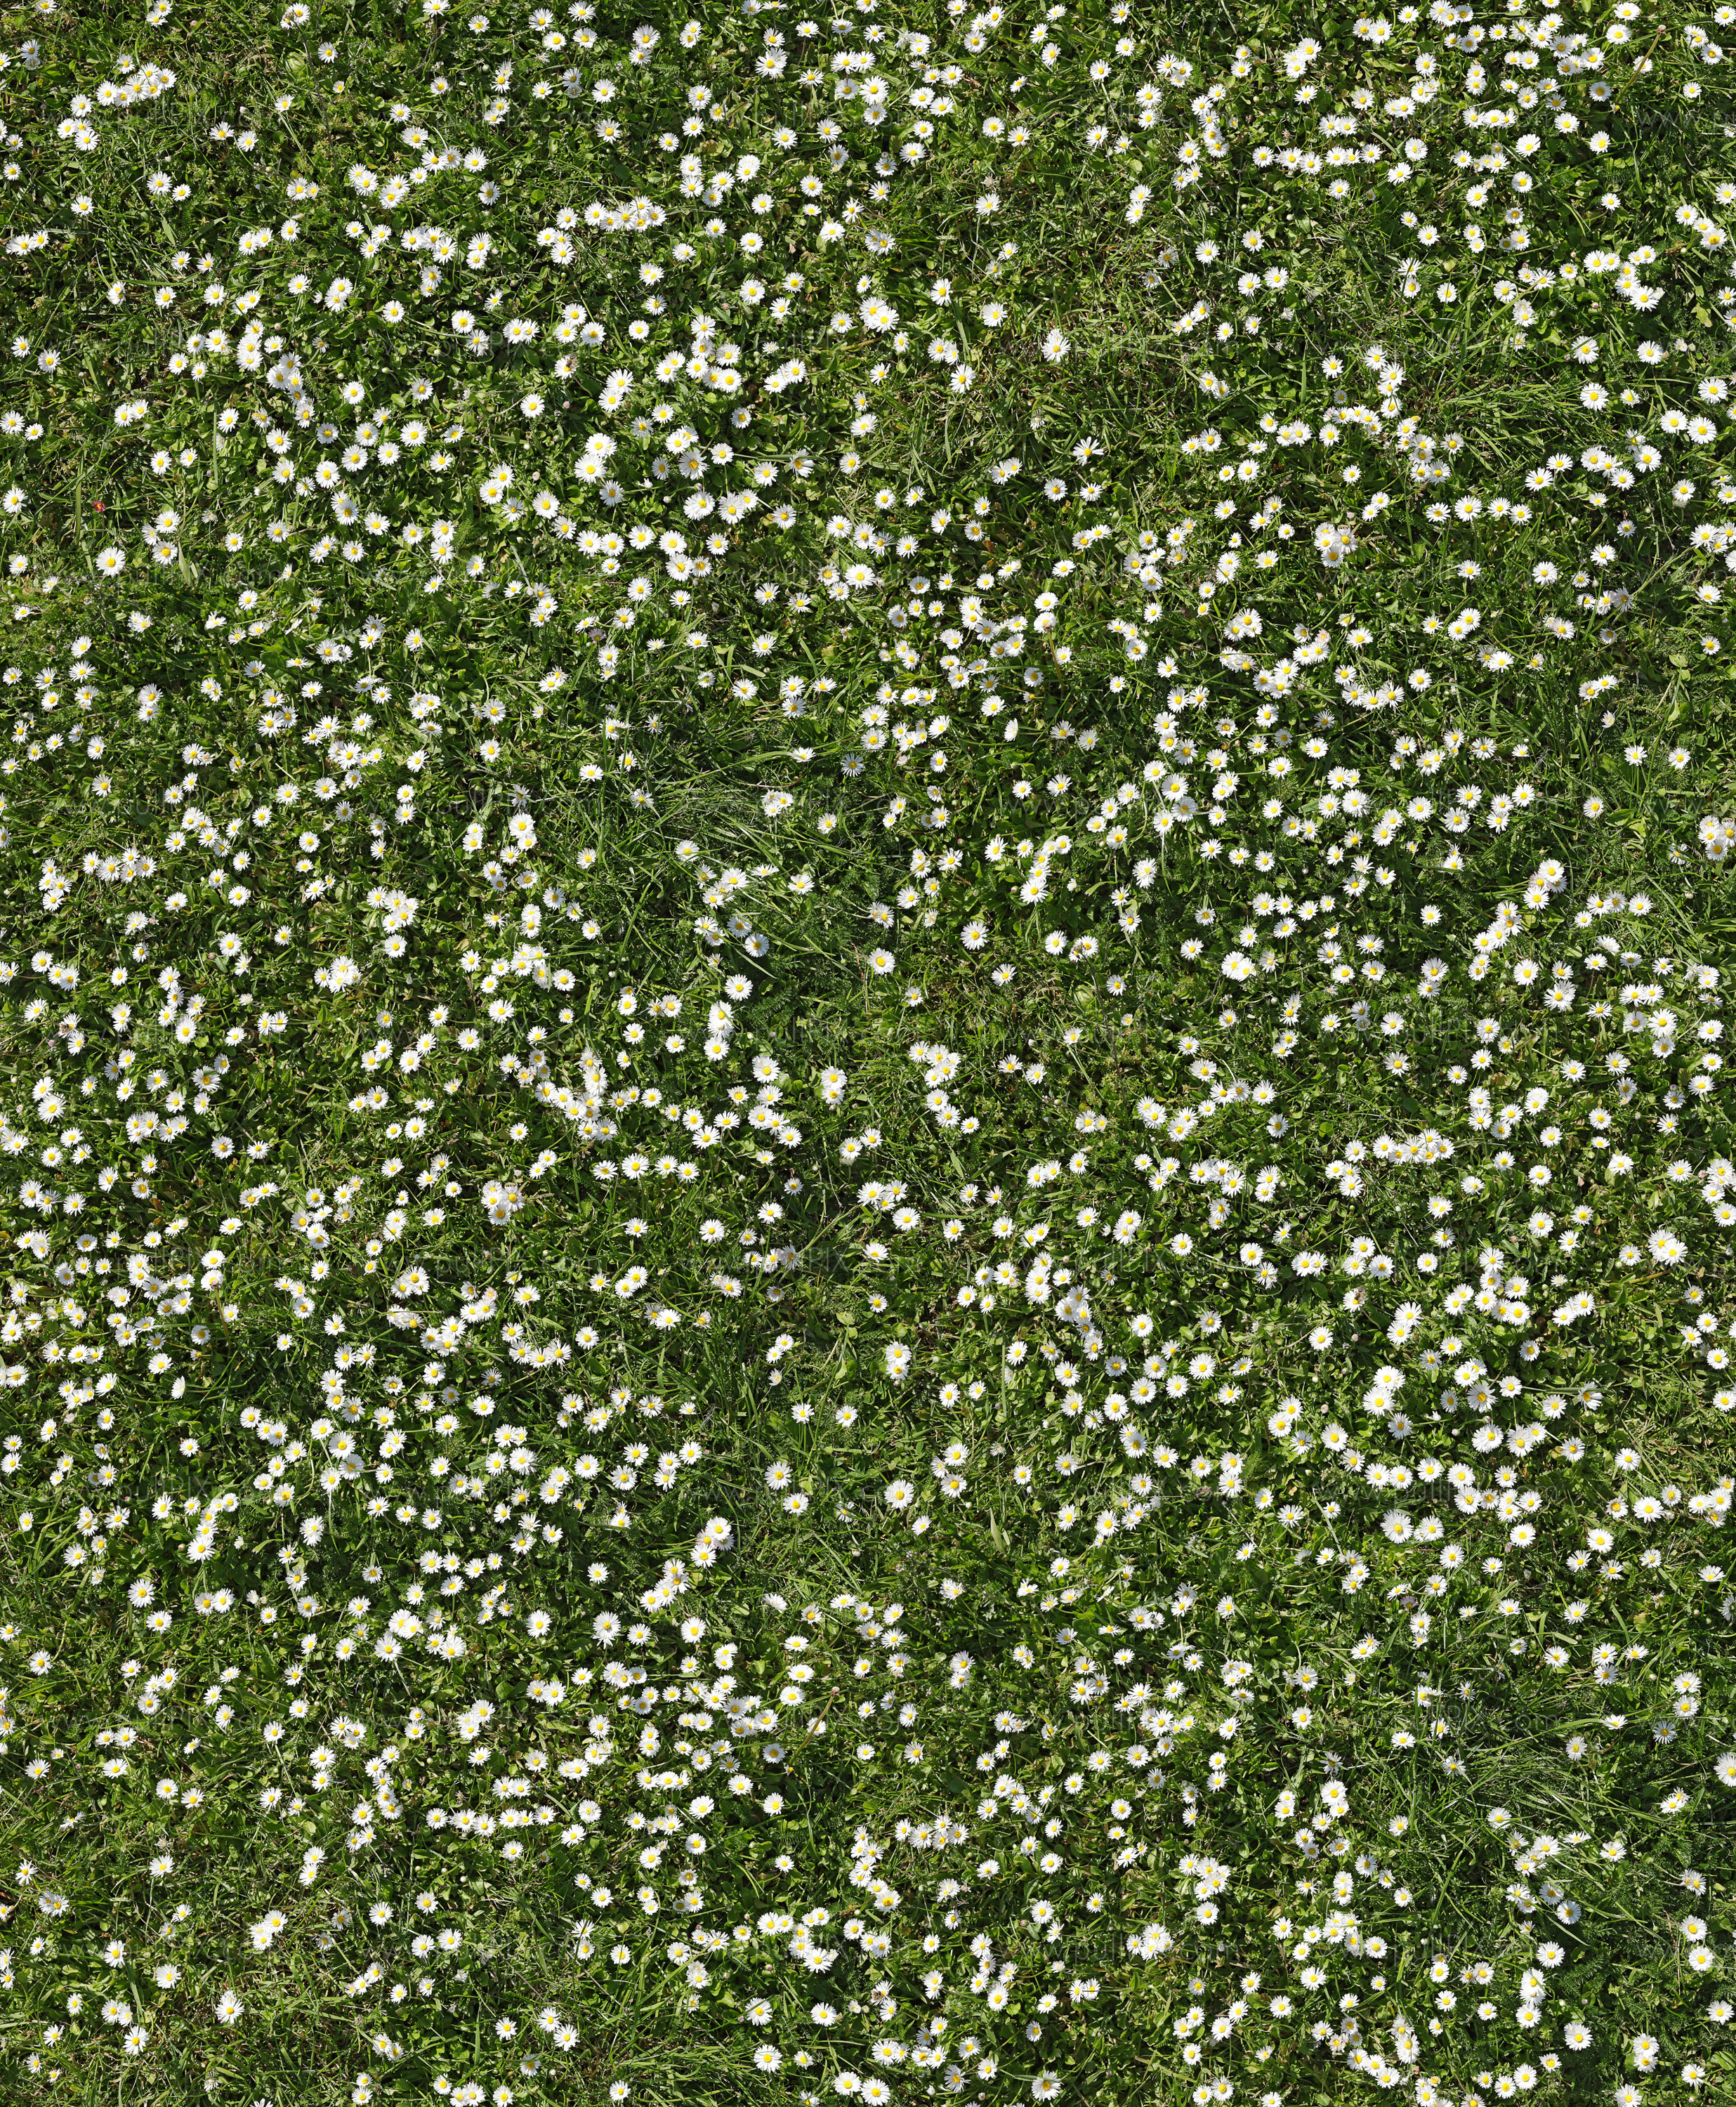 Preview ein meer von gaensebluemchen.jpg